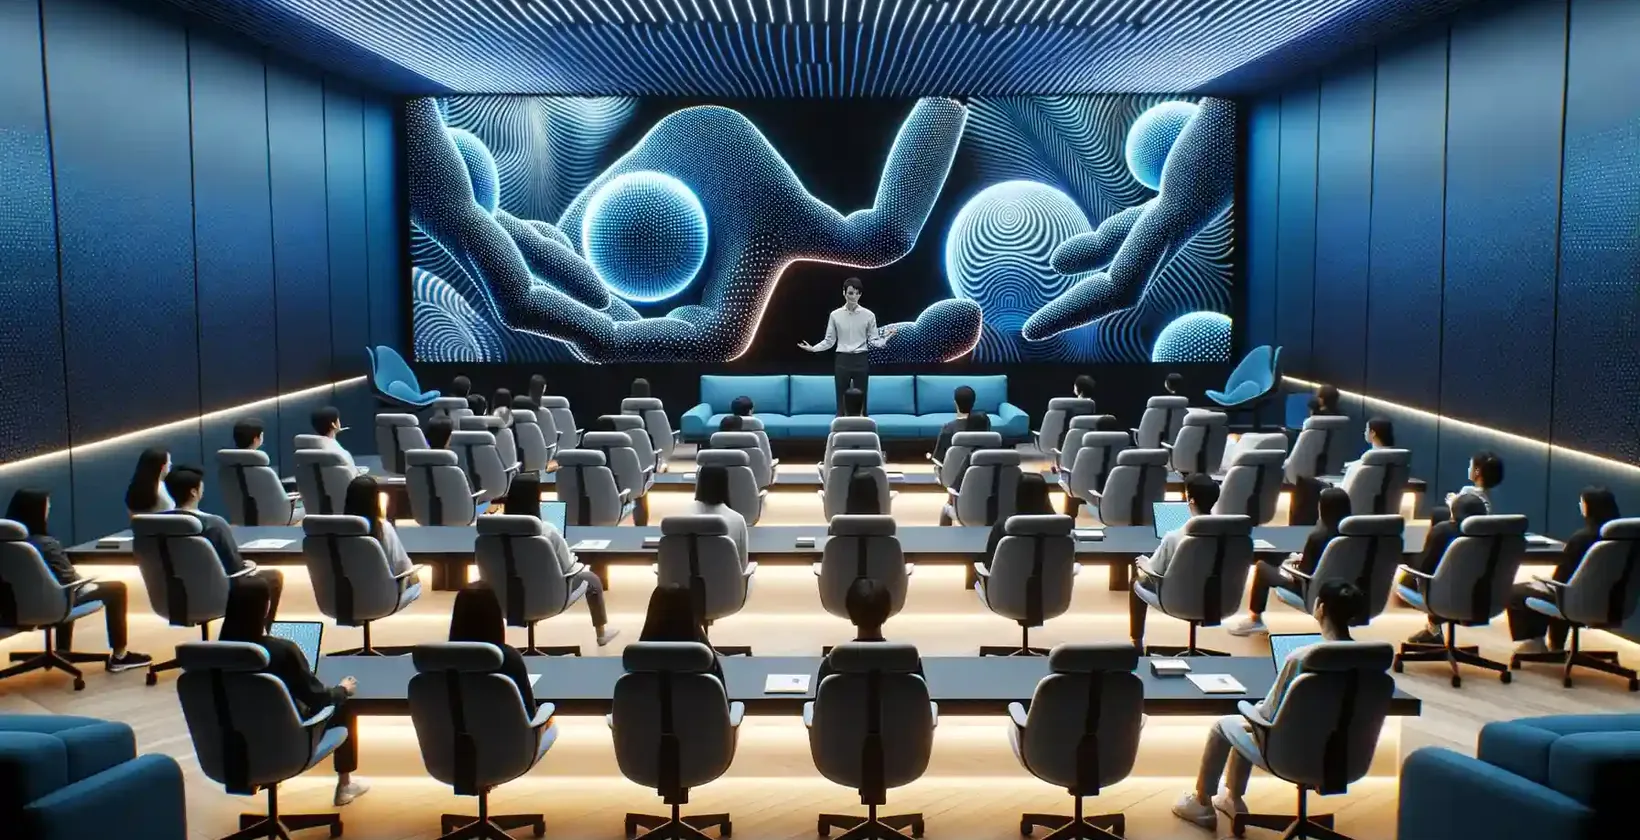 豪華な椅子に座った参加者でいっぱいの近代的な講義室には、各自ワークステーションが設置されている。